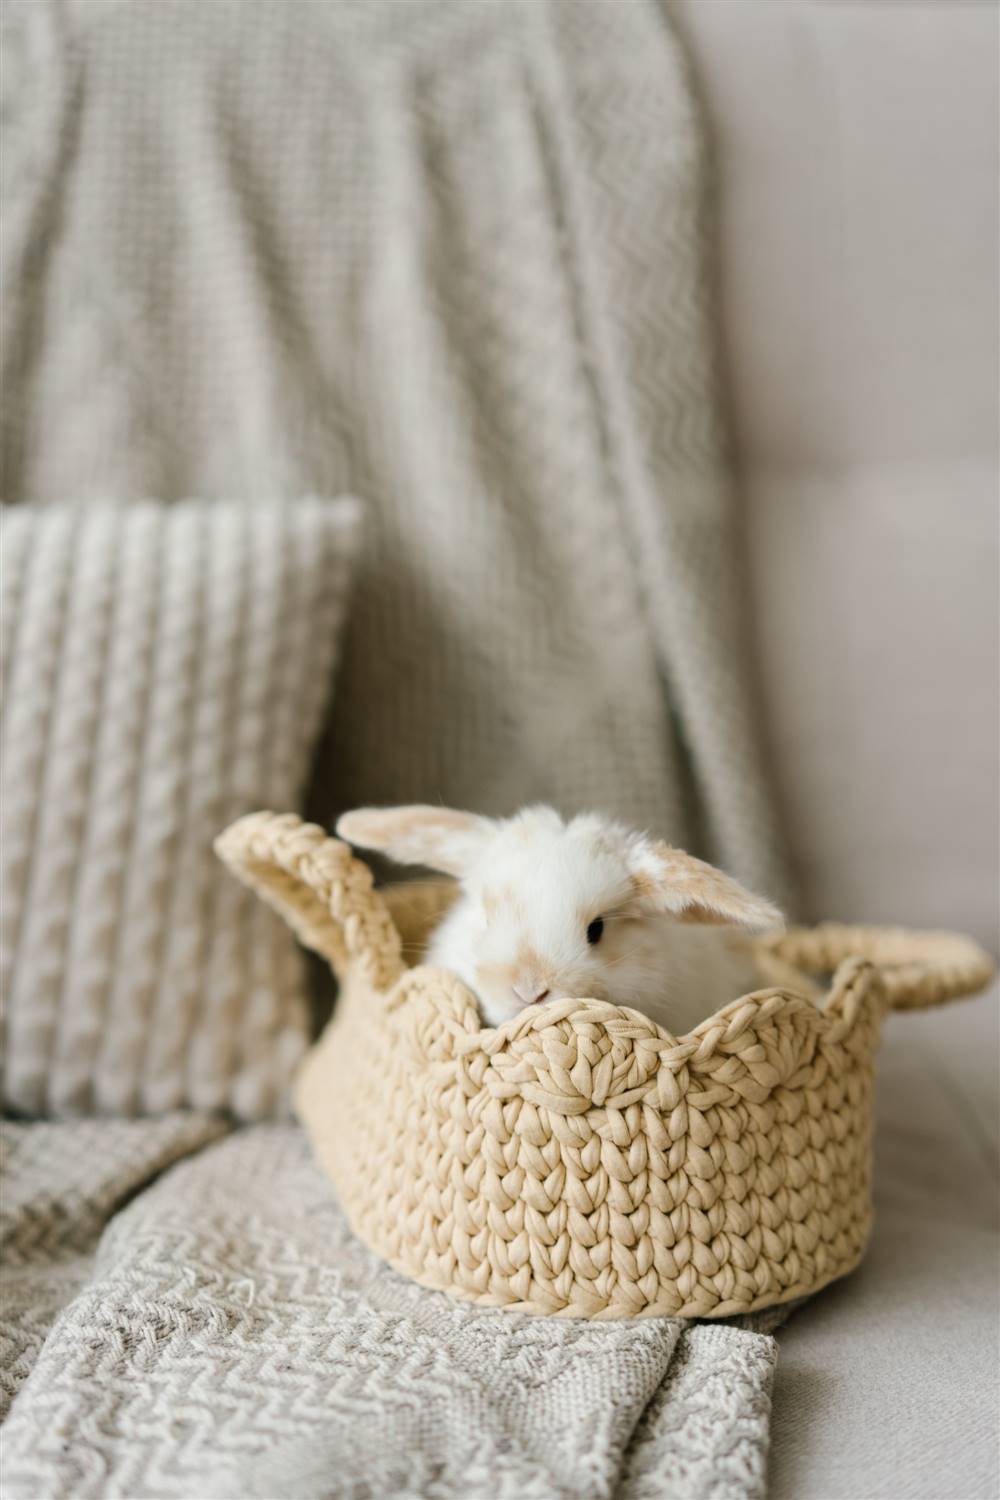 Conejo en una cesta.